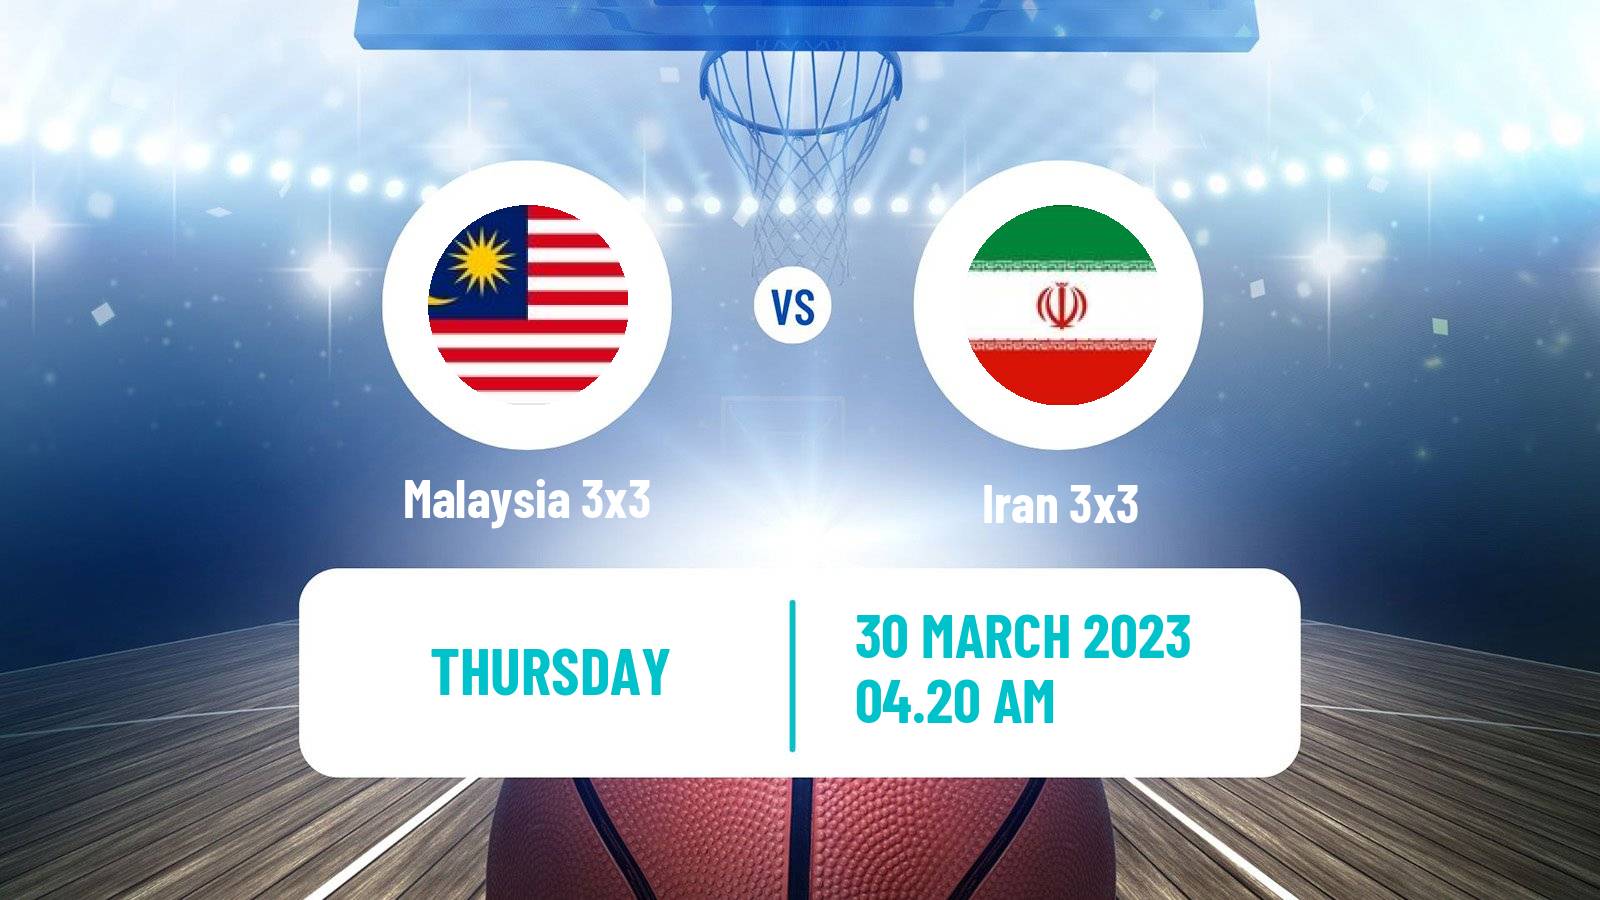 Basketball Asia Cup 3x3 Malaysia 3x3 - Iran 3x3